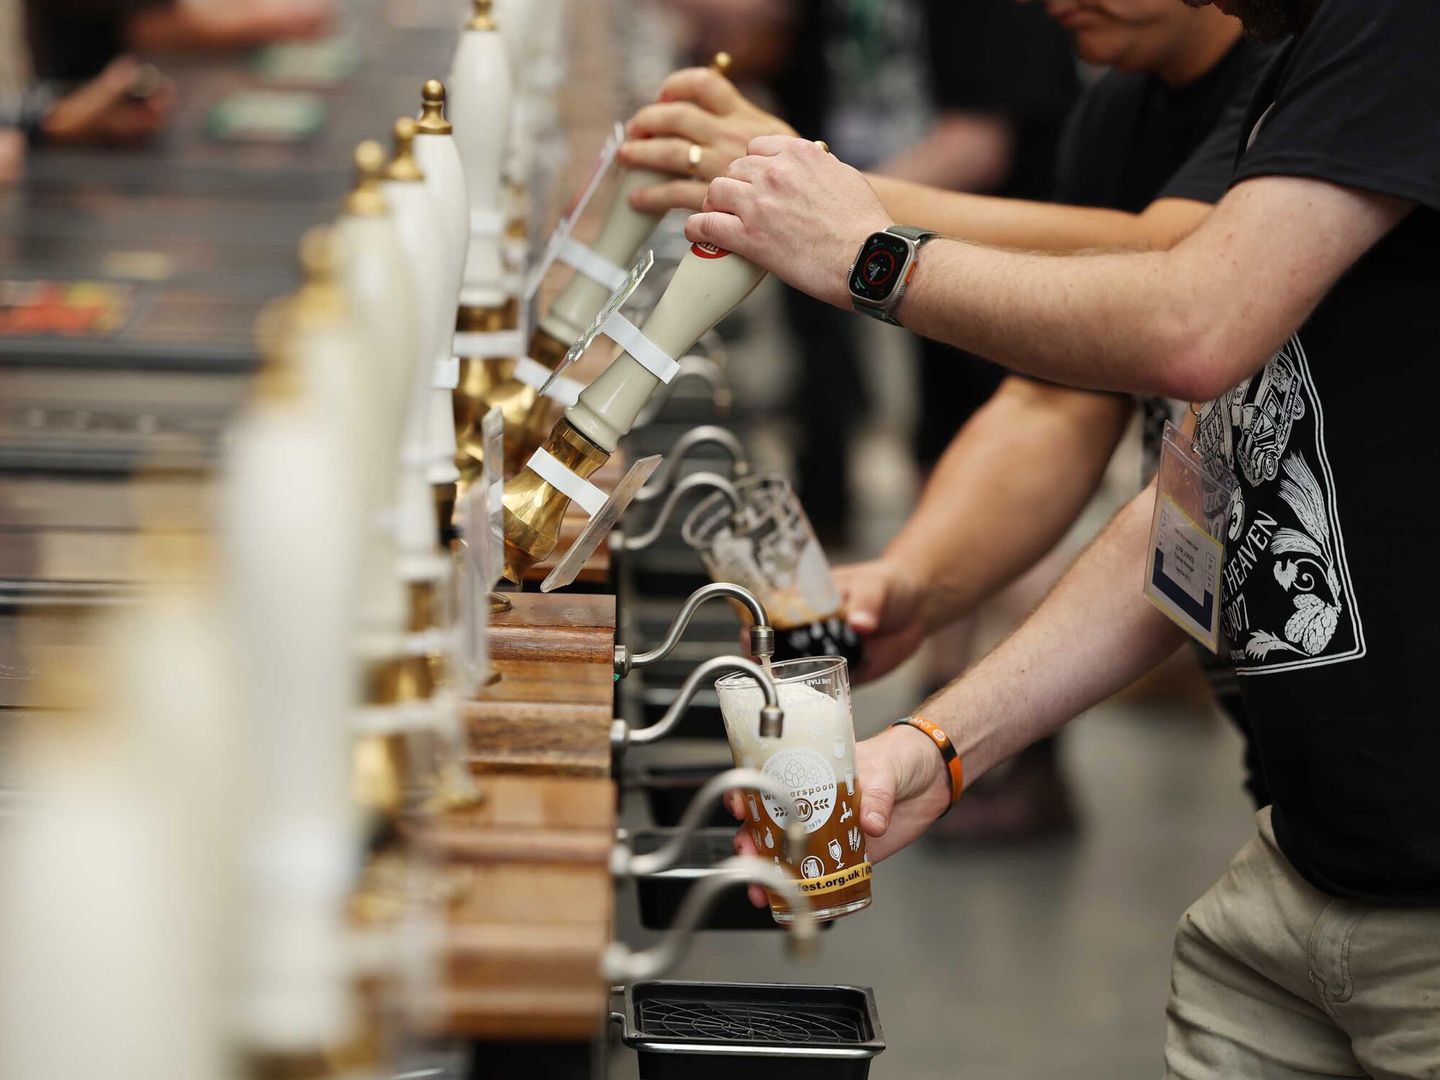 Personas se sirven cerveza en el Great British Beer Festival en Londres, Gran Bretaña. (EFE/NEIL HALL)